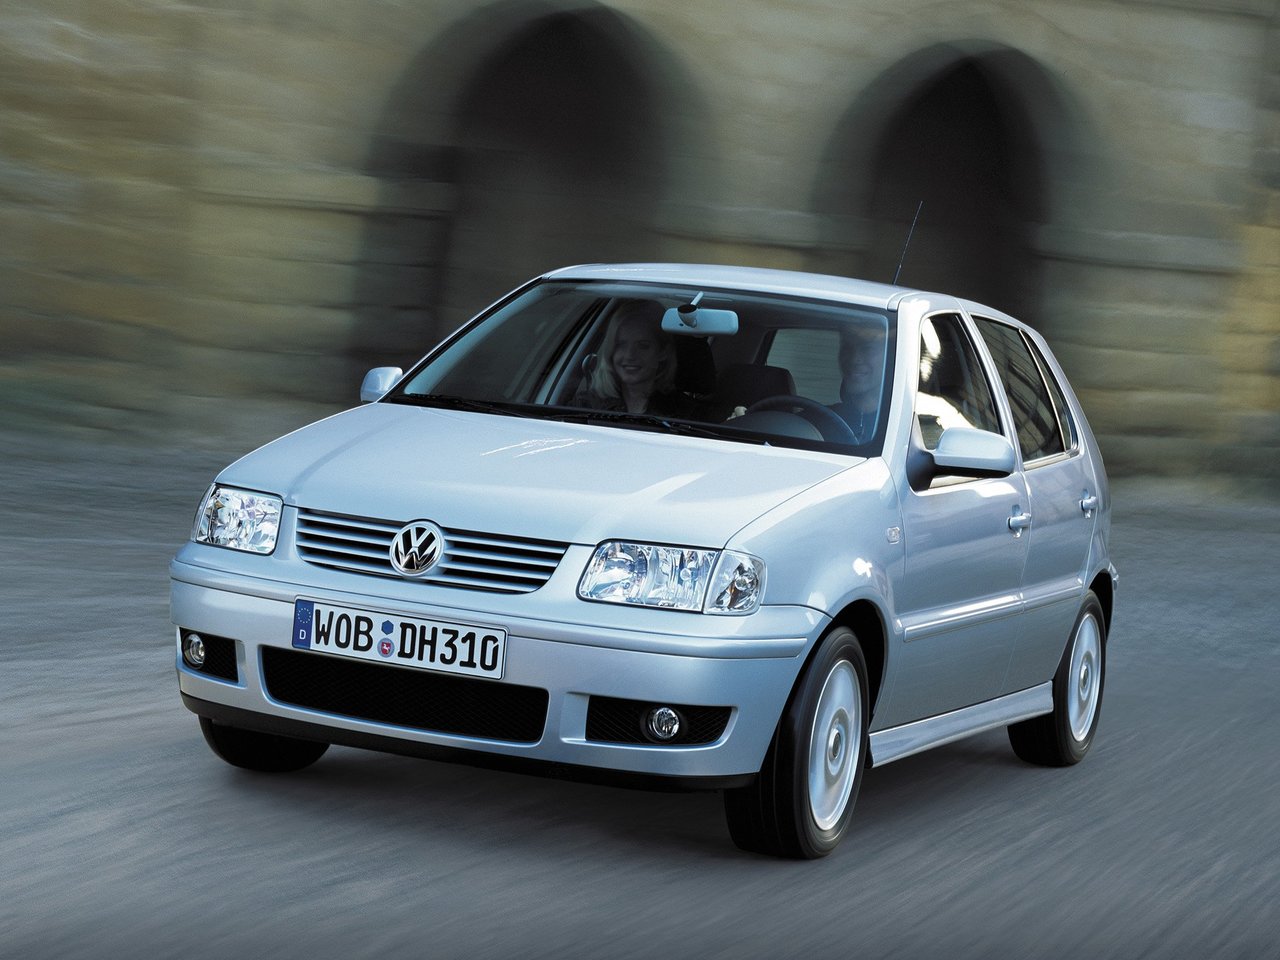 Volkswagen Polo, 1999 - 2001, III Рестайлинг, хэтчбек 5 дв.: купить, технические характеристики, отзывы и объявления